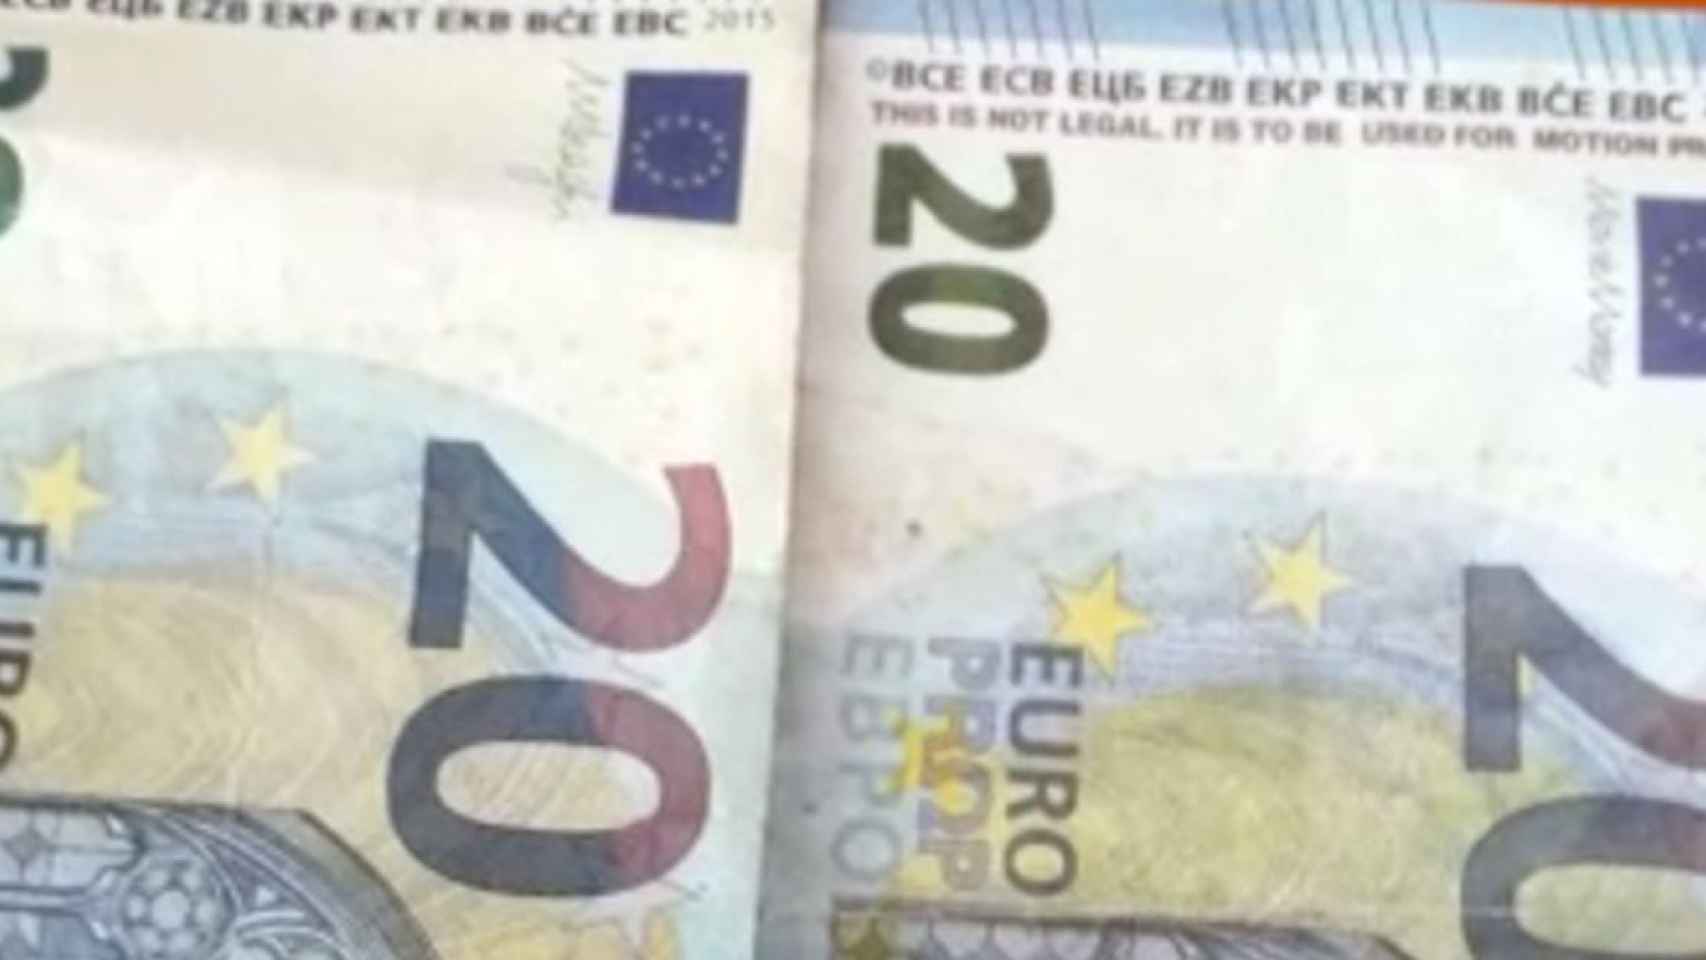 La policía advierte sobre mas billetes falsos